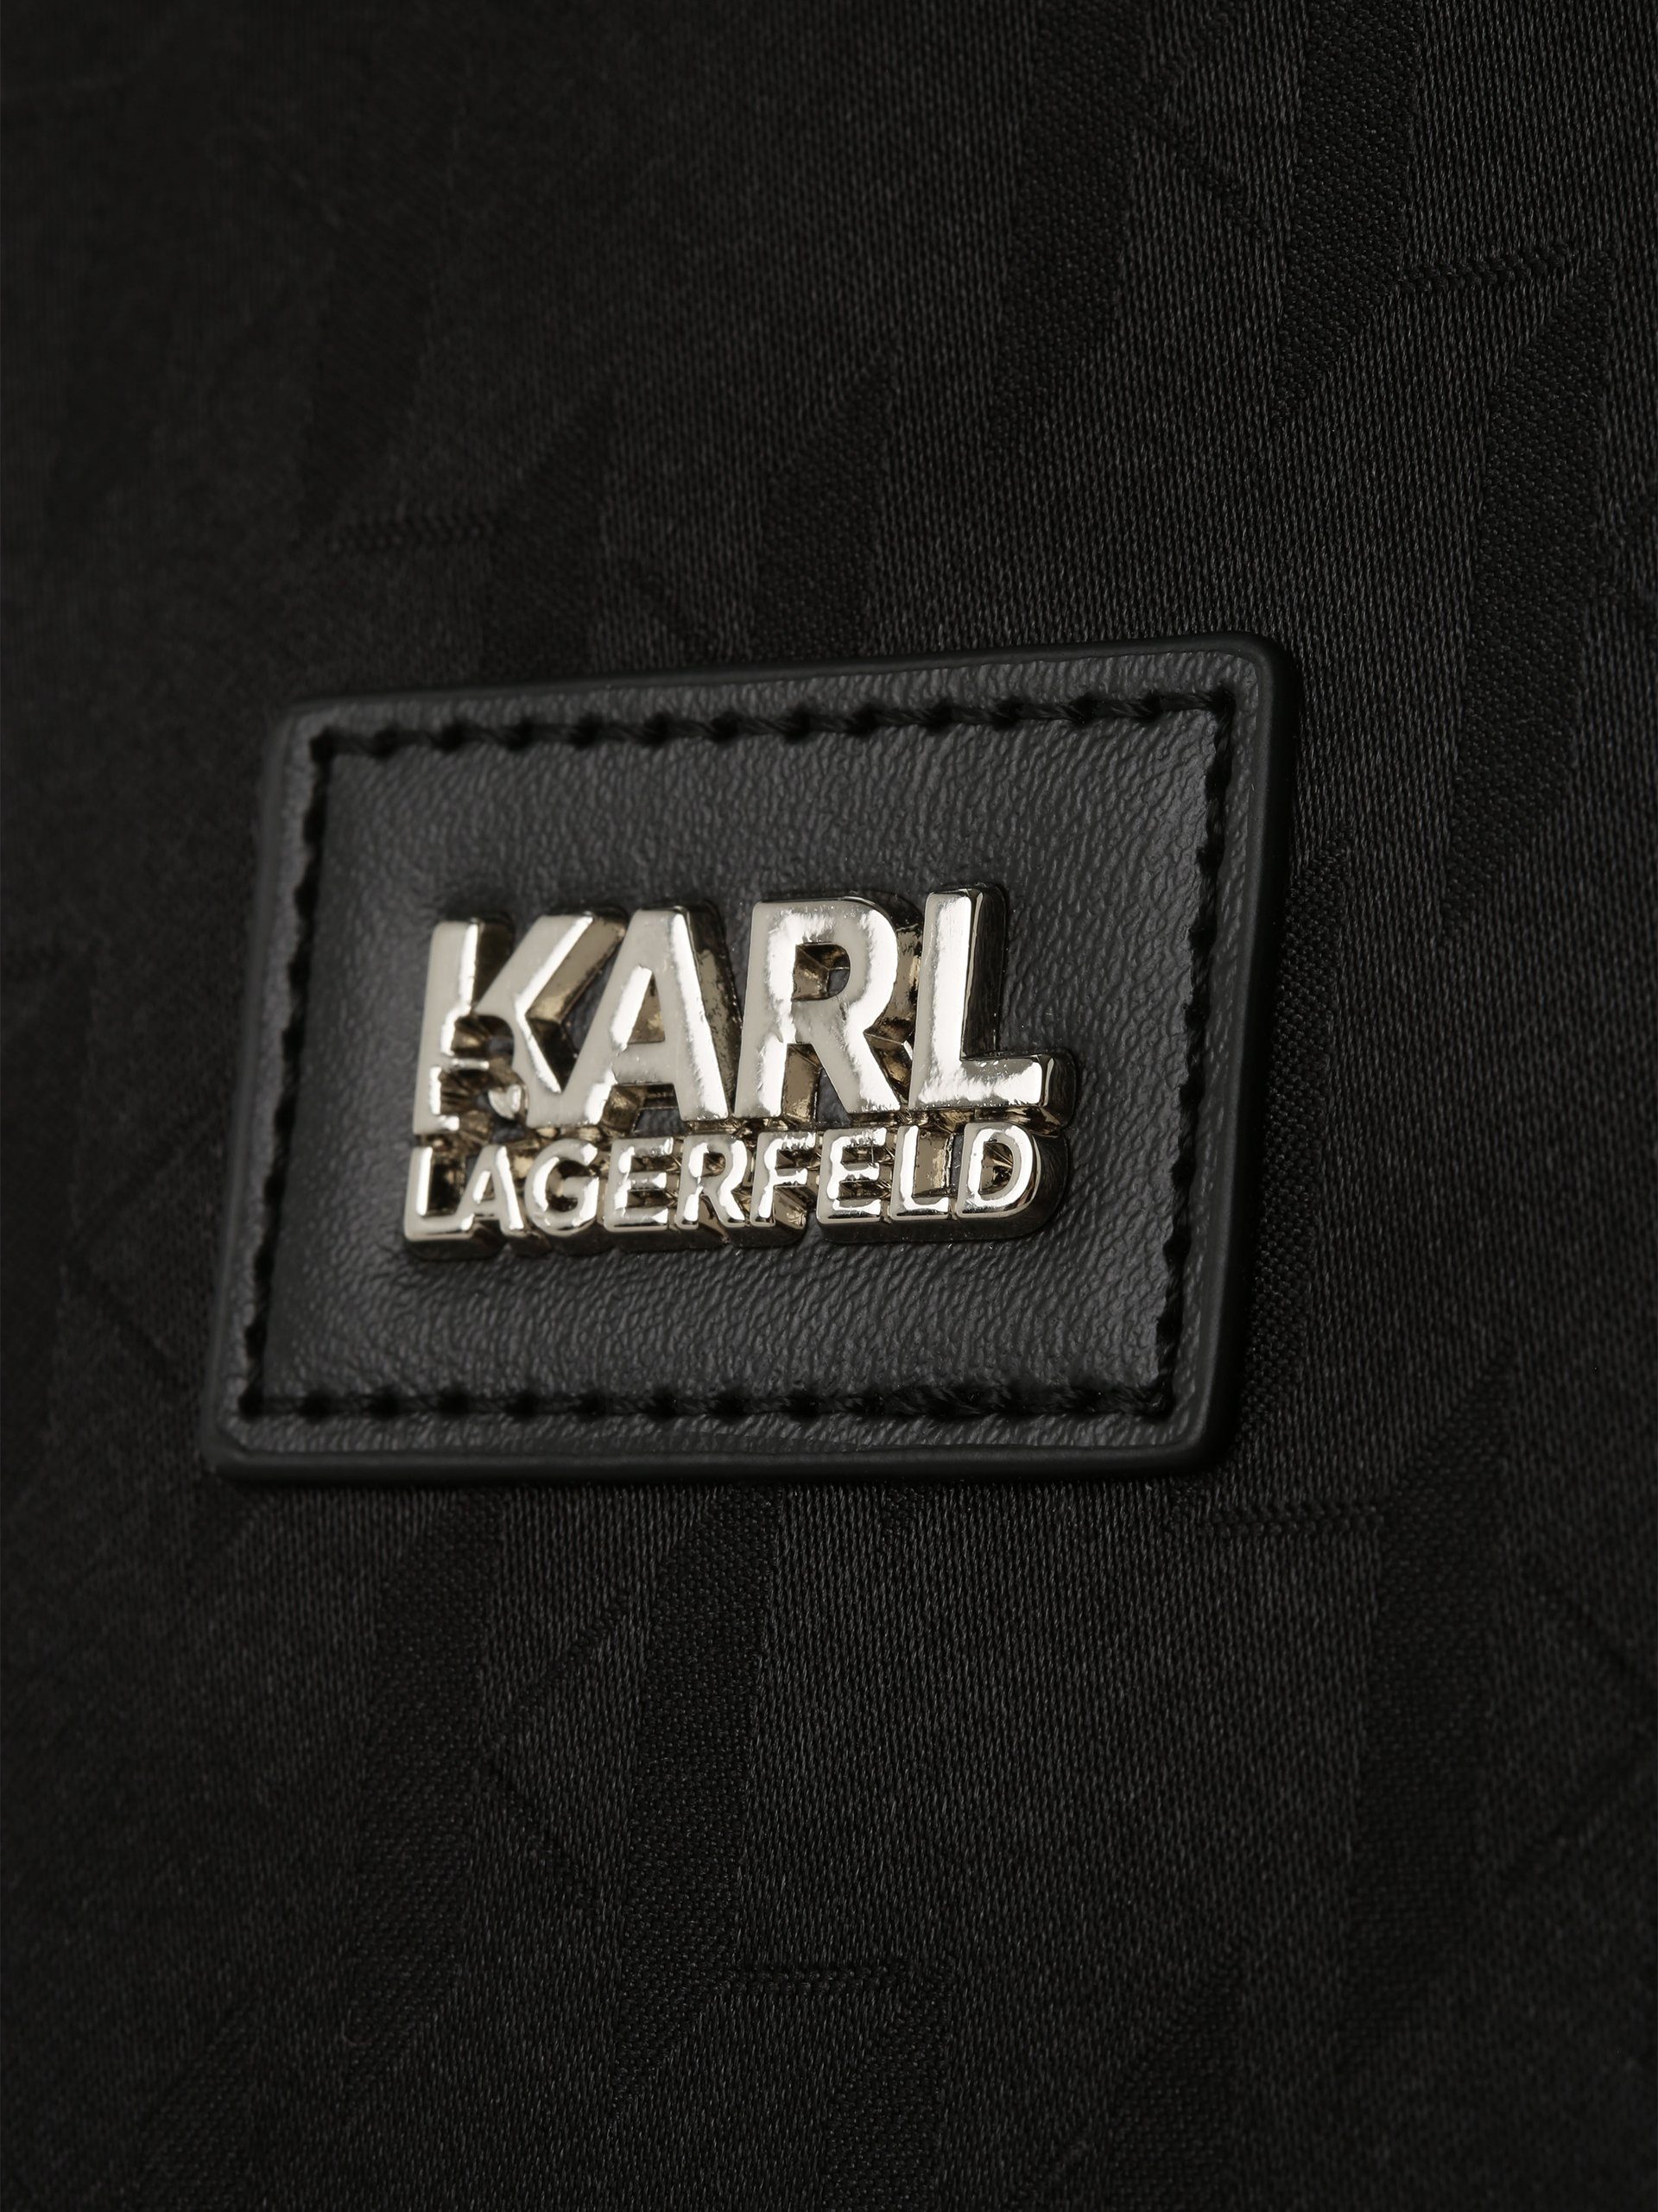 KARL LAGERFELD Shopper